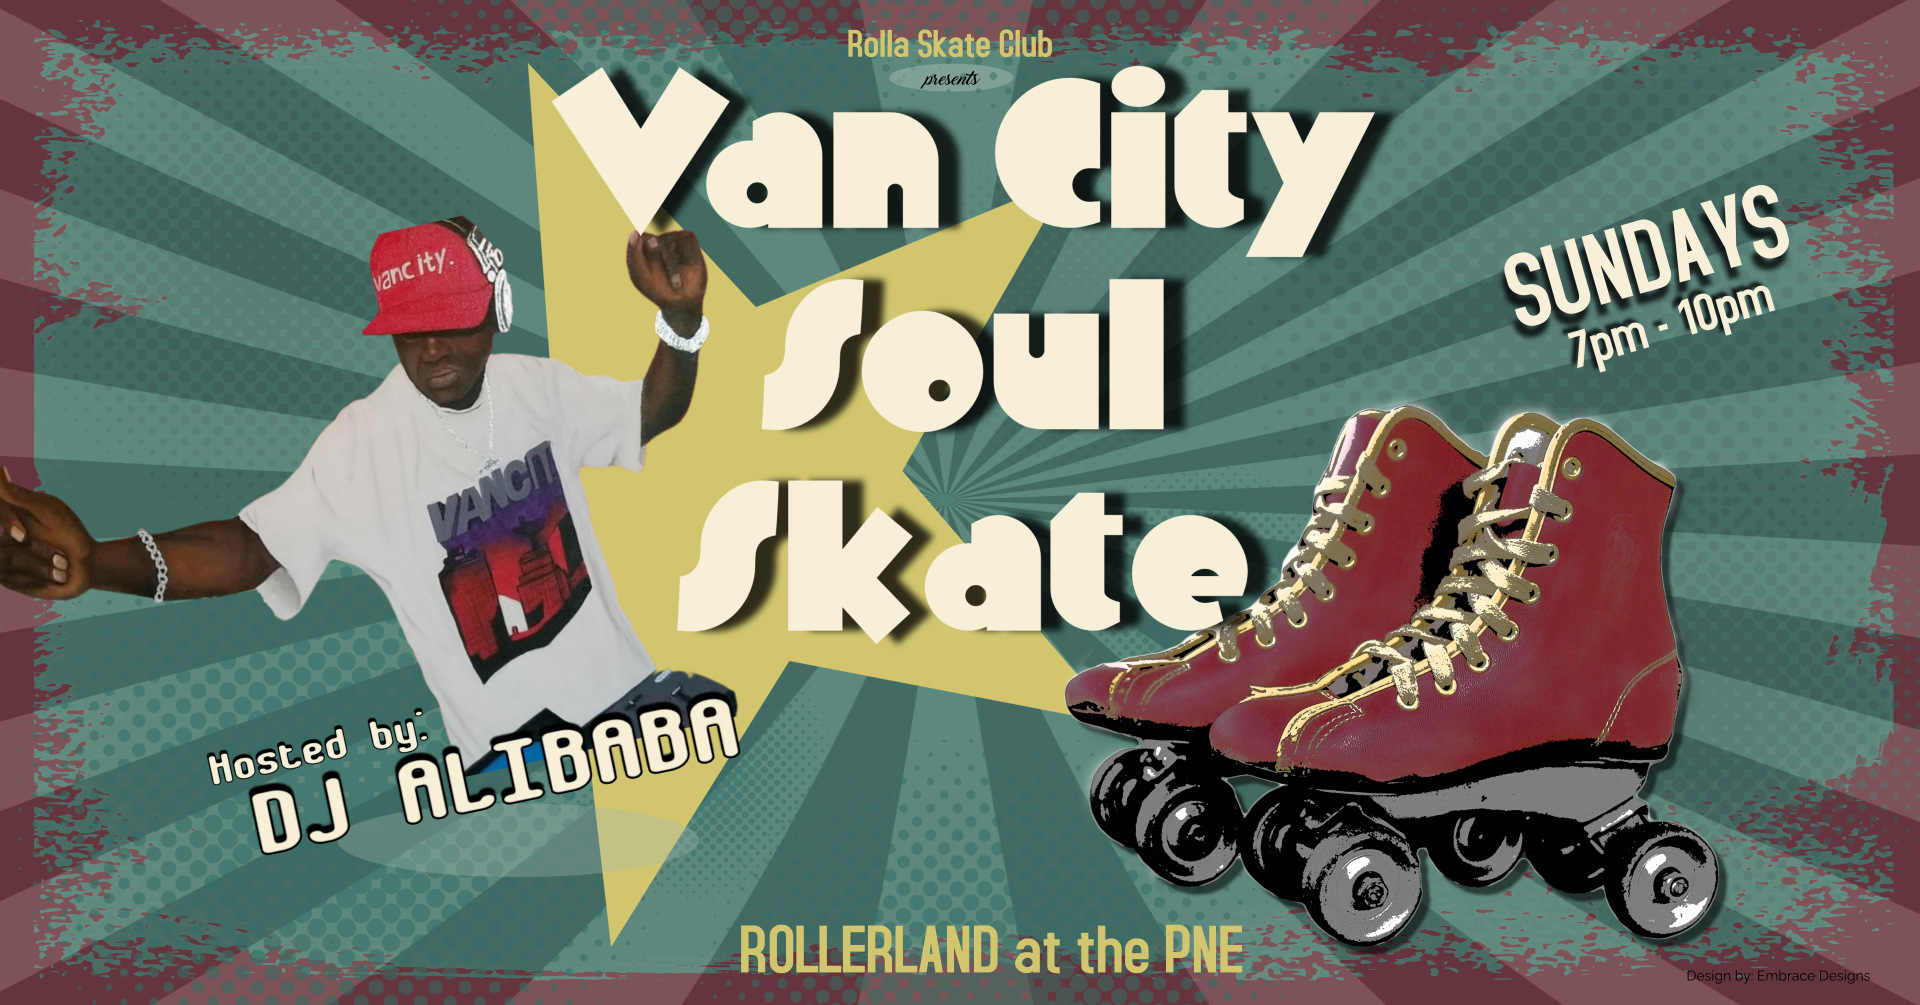 VanCity Soul Skate every Sunday at RollerLandPNE